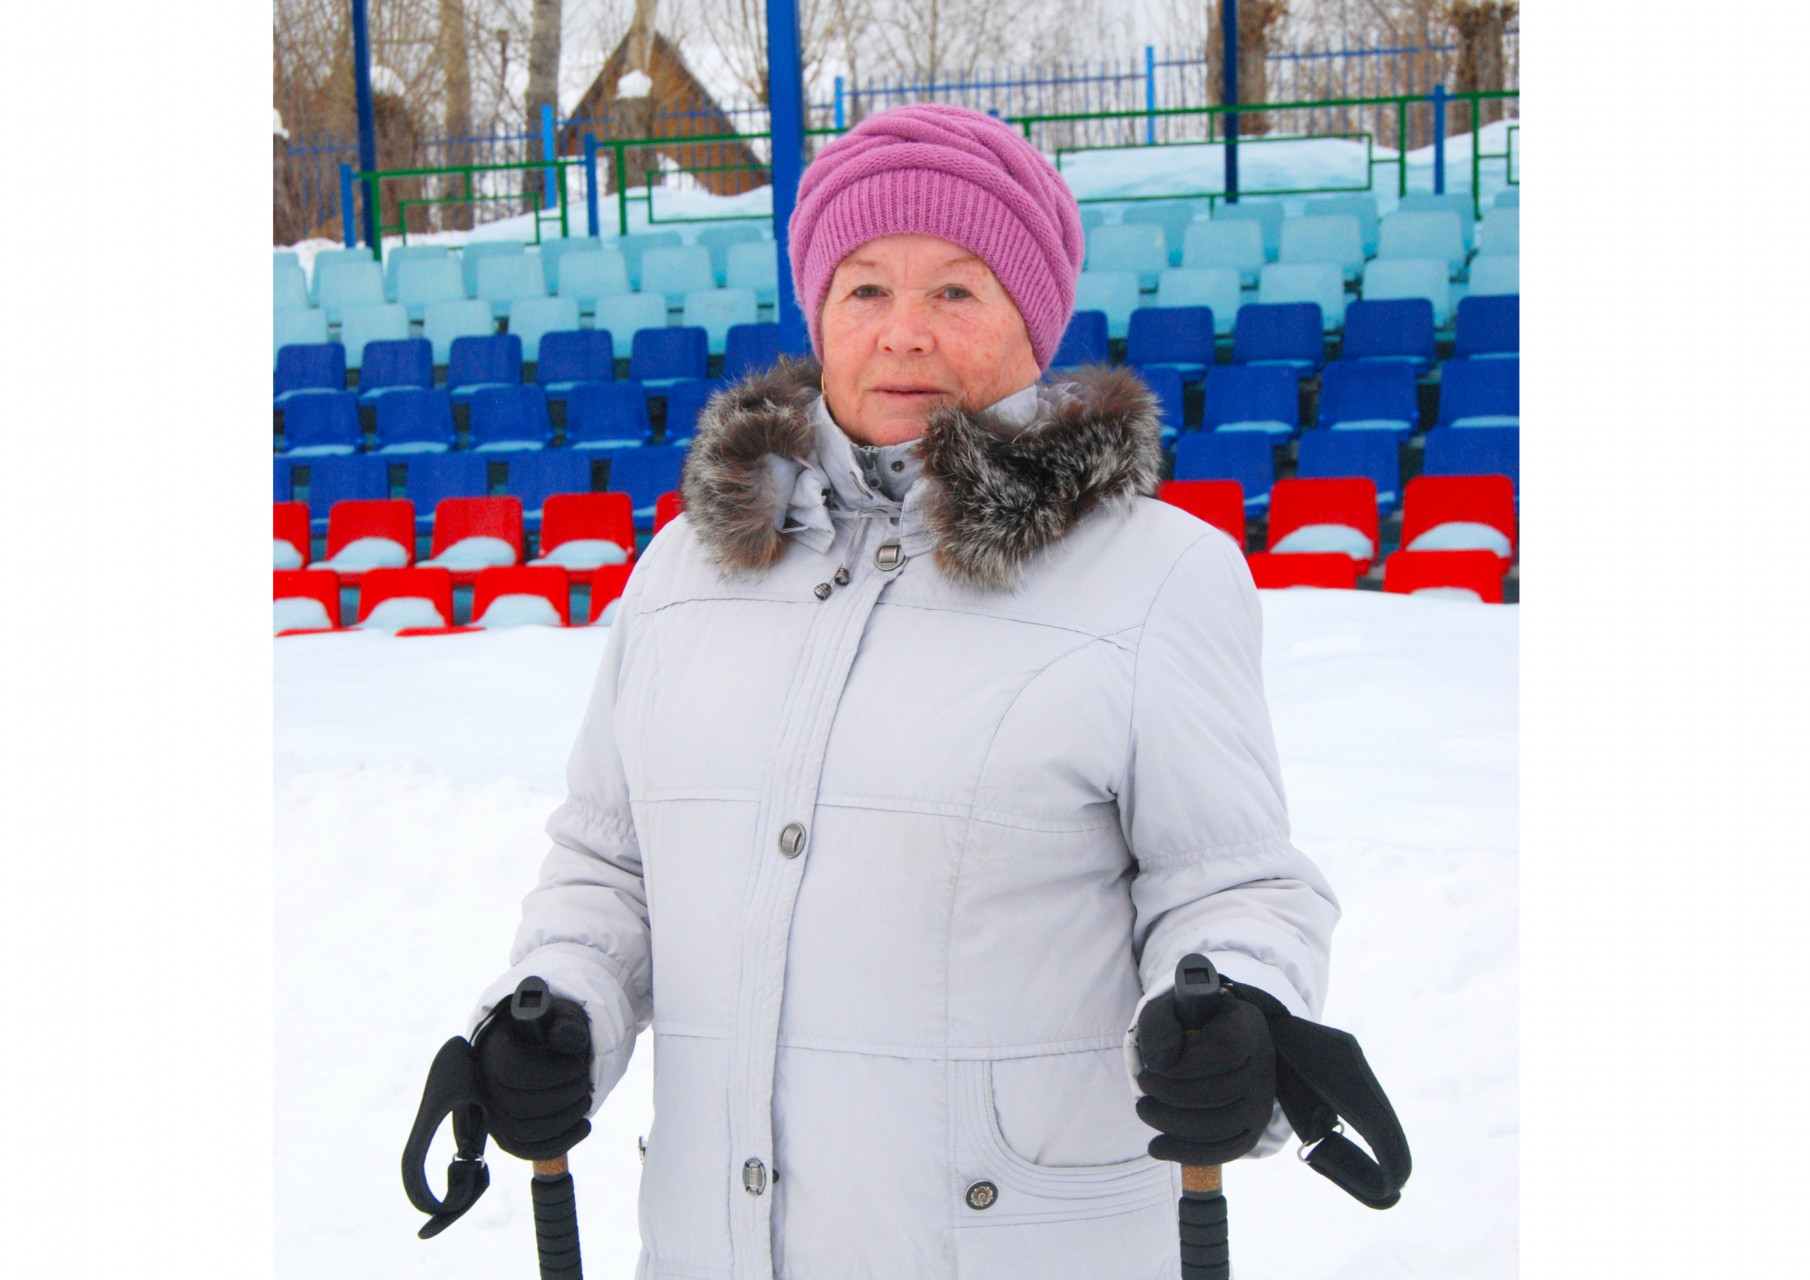 Лидия Ивановна Кудашева, ветеран радиозавода, много лет занимается скандинавской ходьбой. “Пять лет хожу на стадионе каждый день. Что это дает? Бодрость, заряд энергии! Чувствую себя лучше, когда позанимаюсь”.